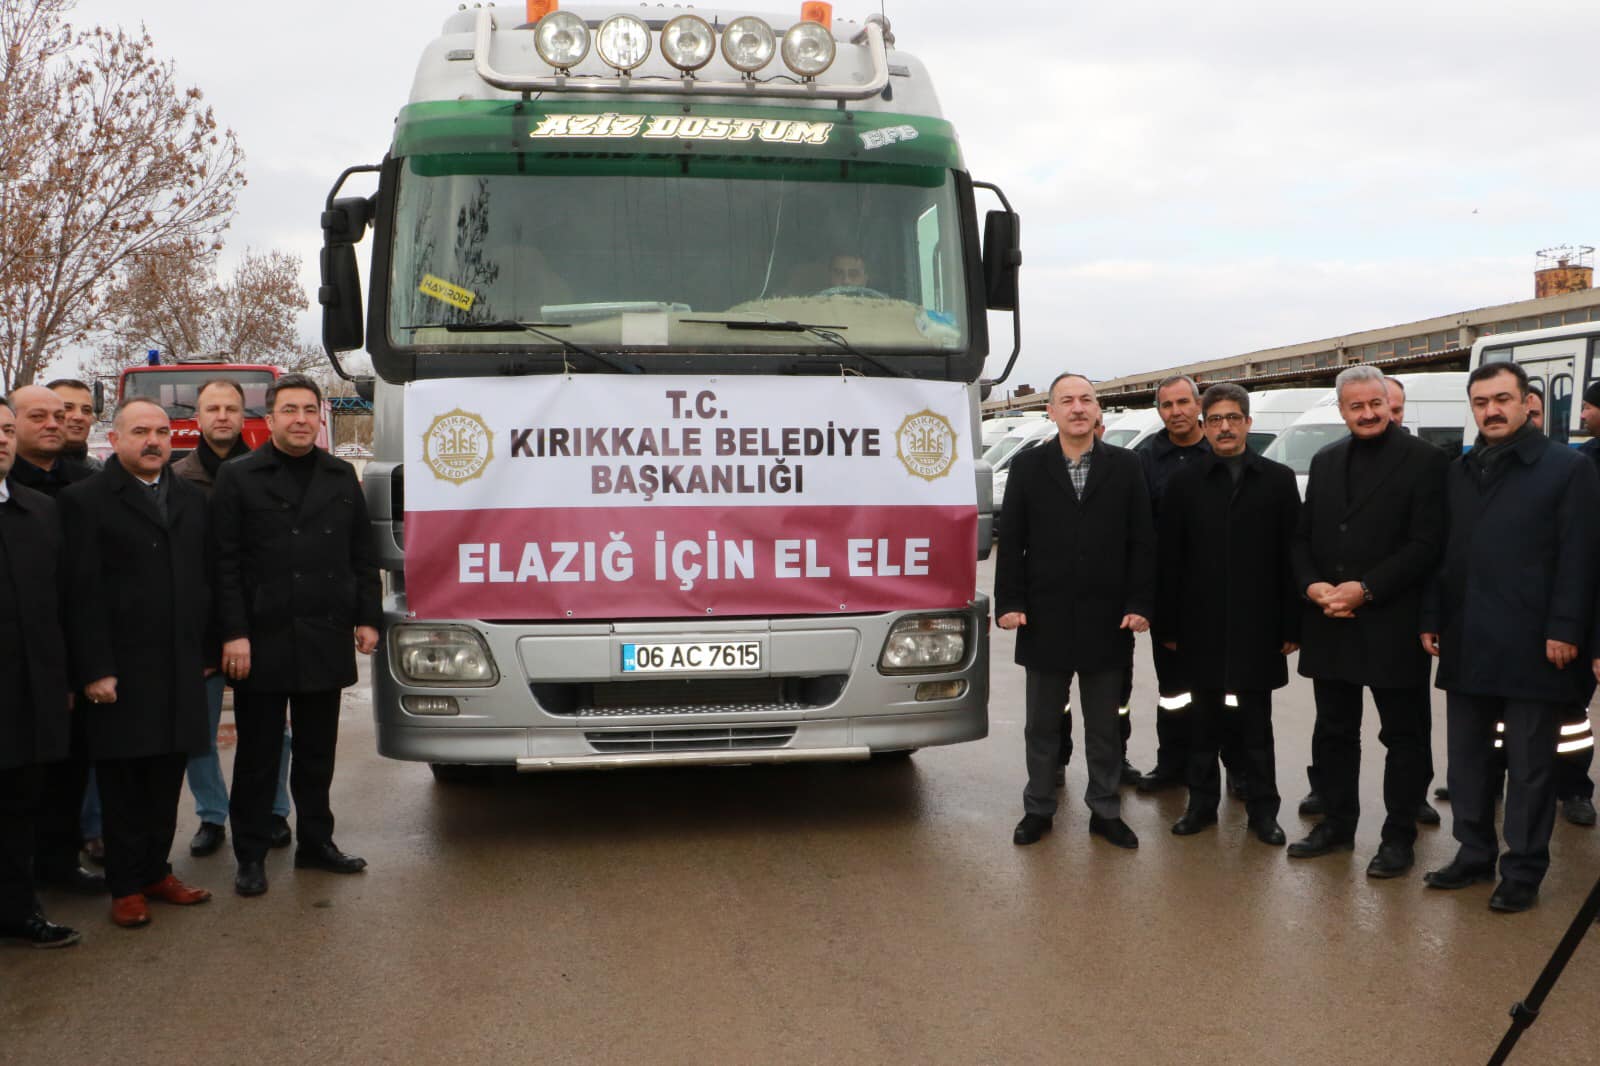 Kırıkkale Belediyesi'nden Elazığ'a yardım eli